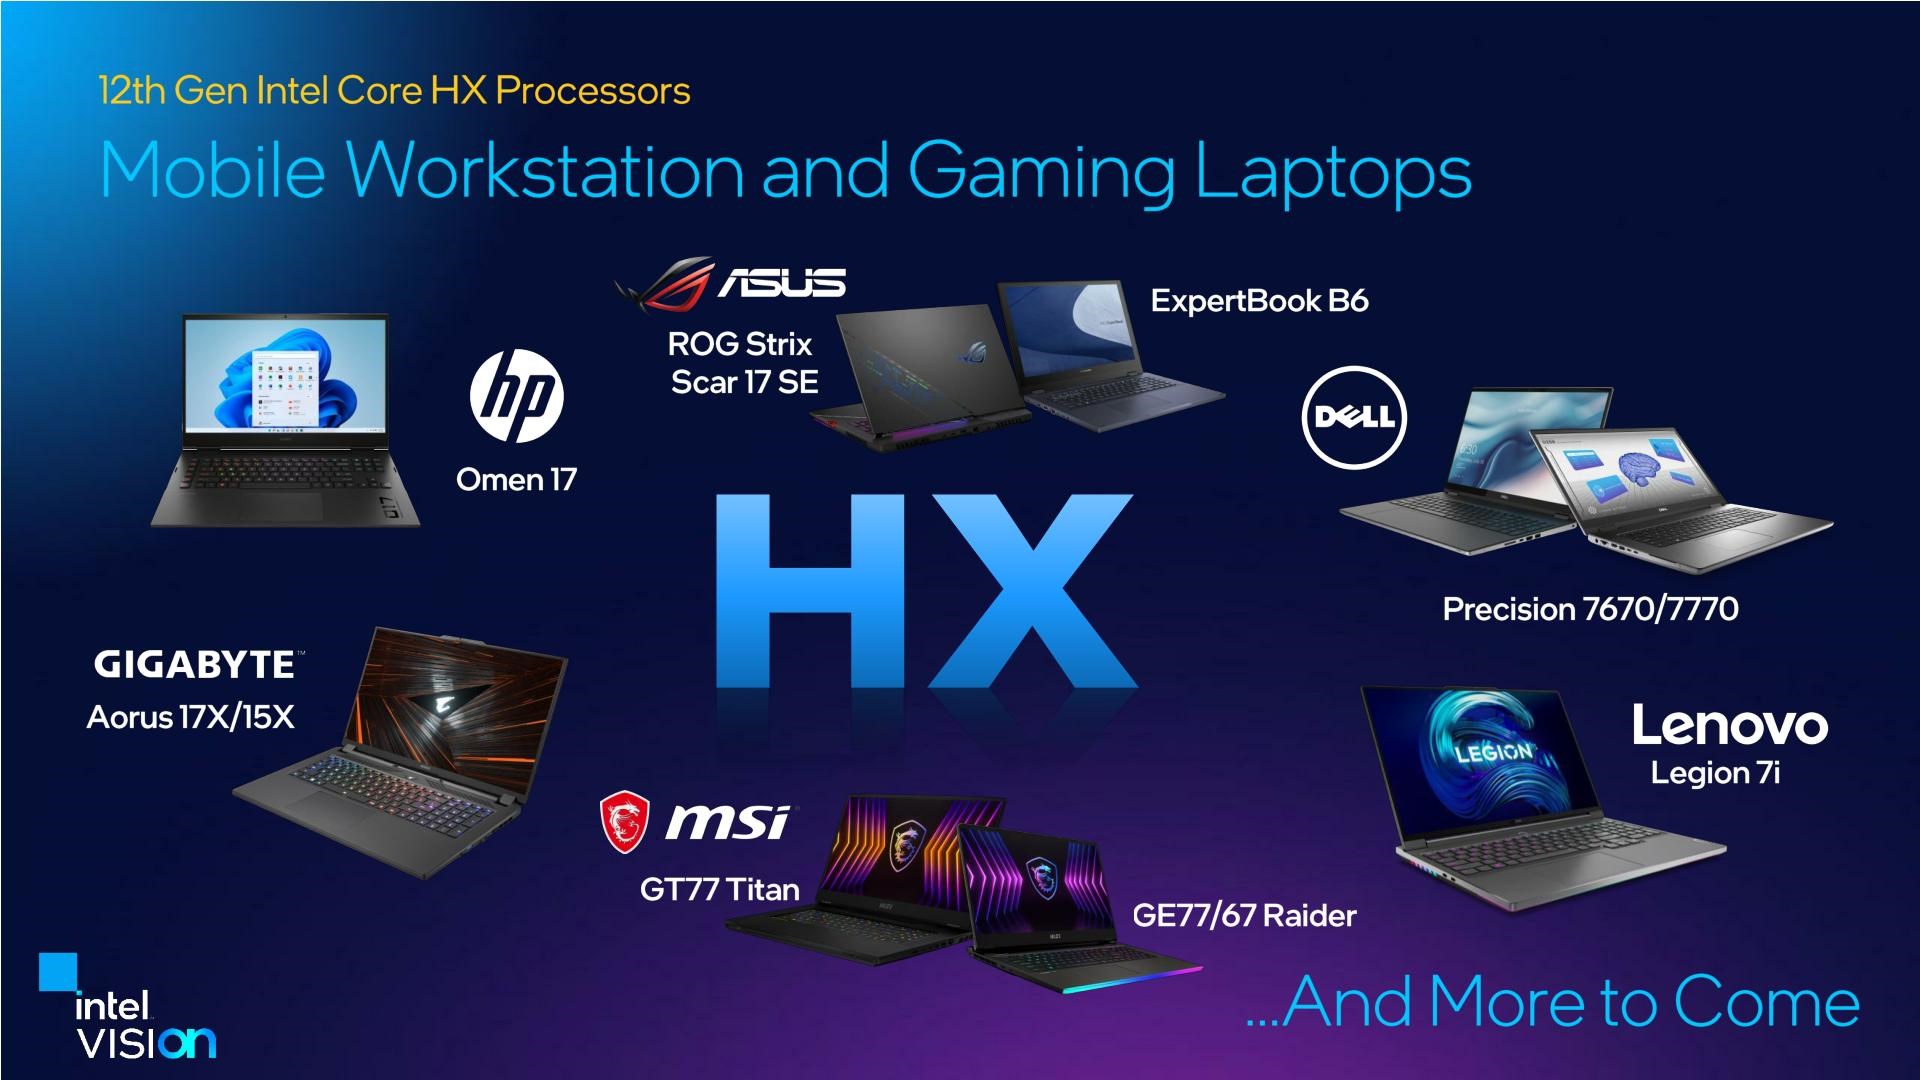 On ikinci nesil Intel Core HX